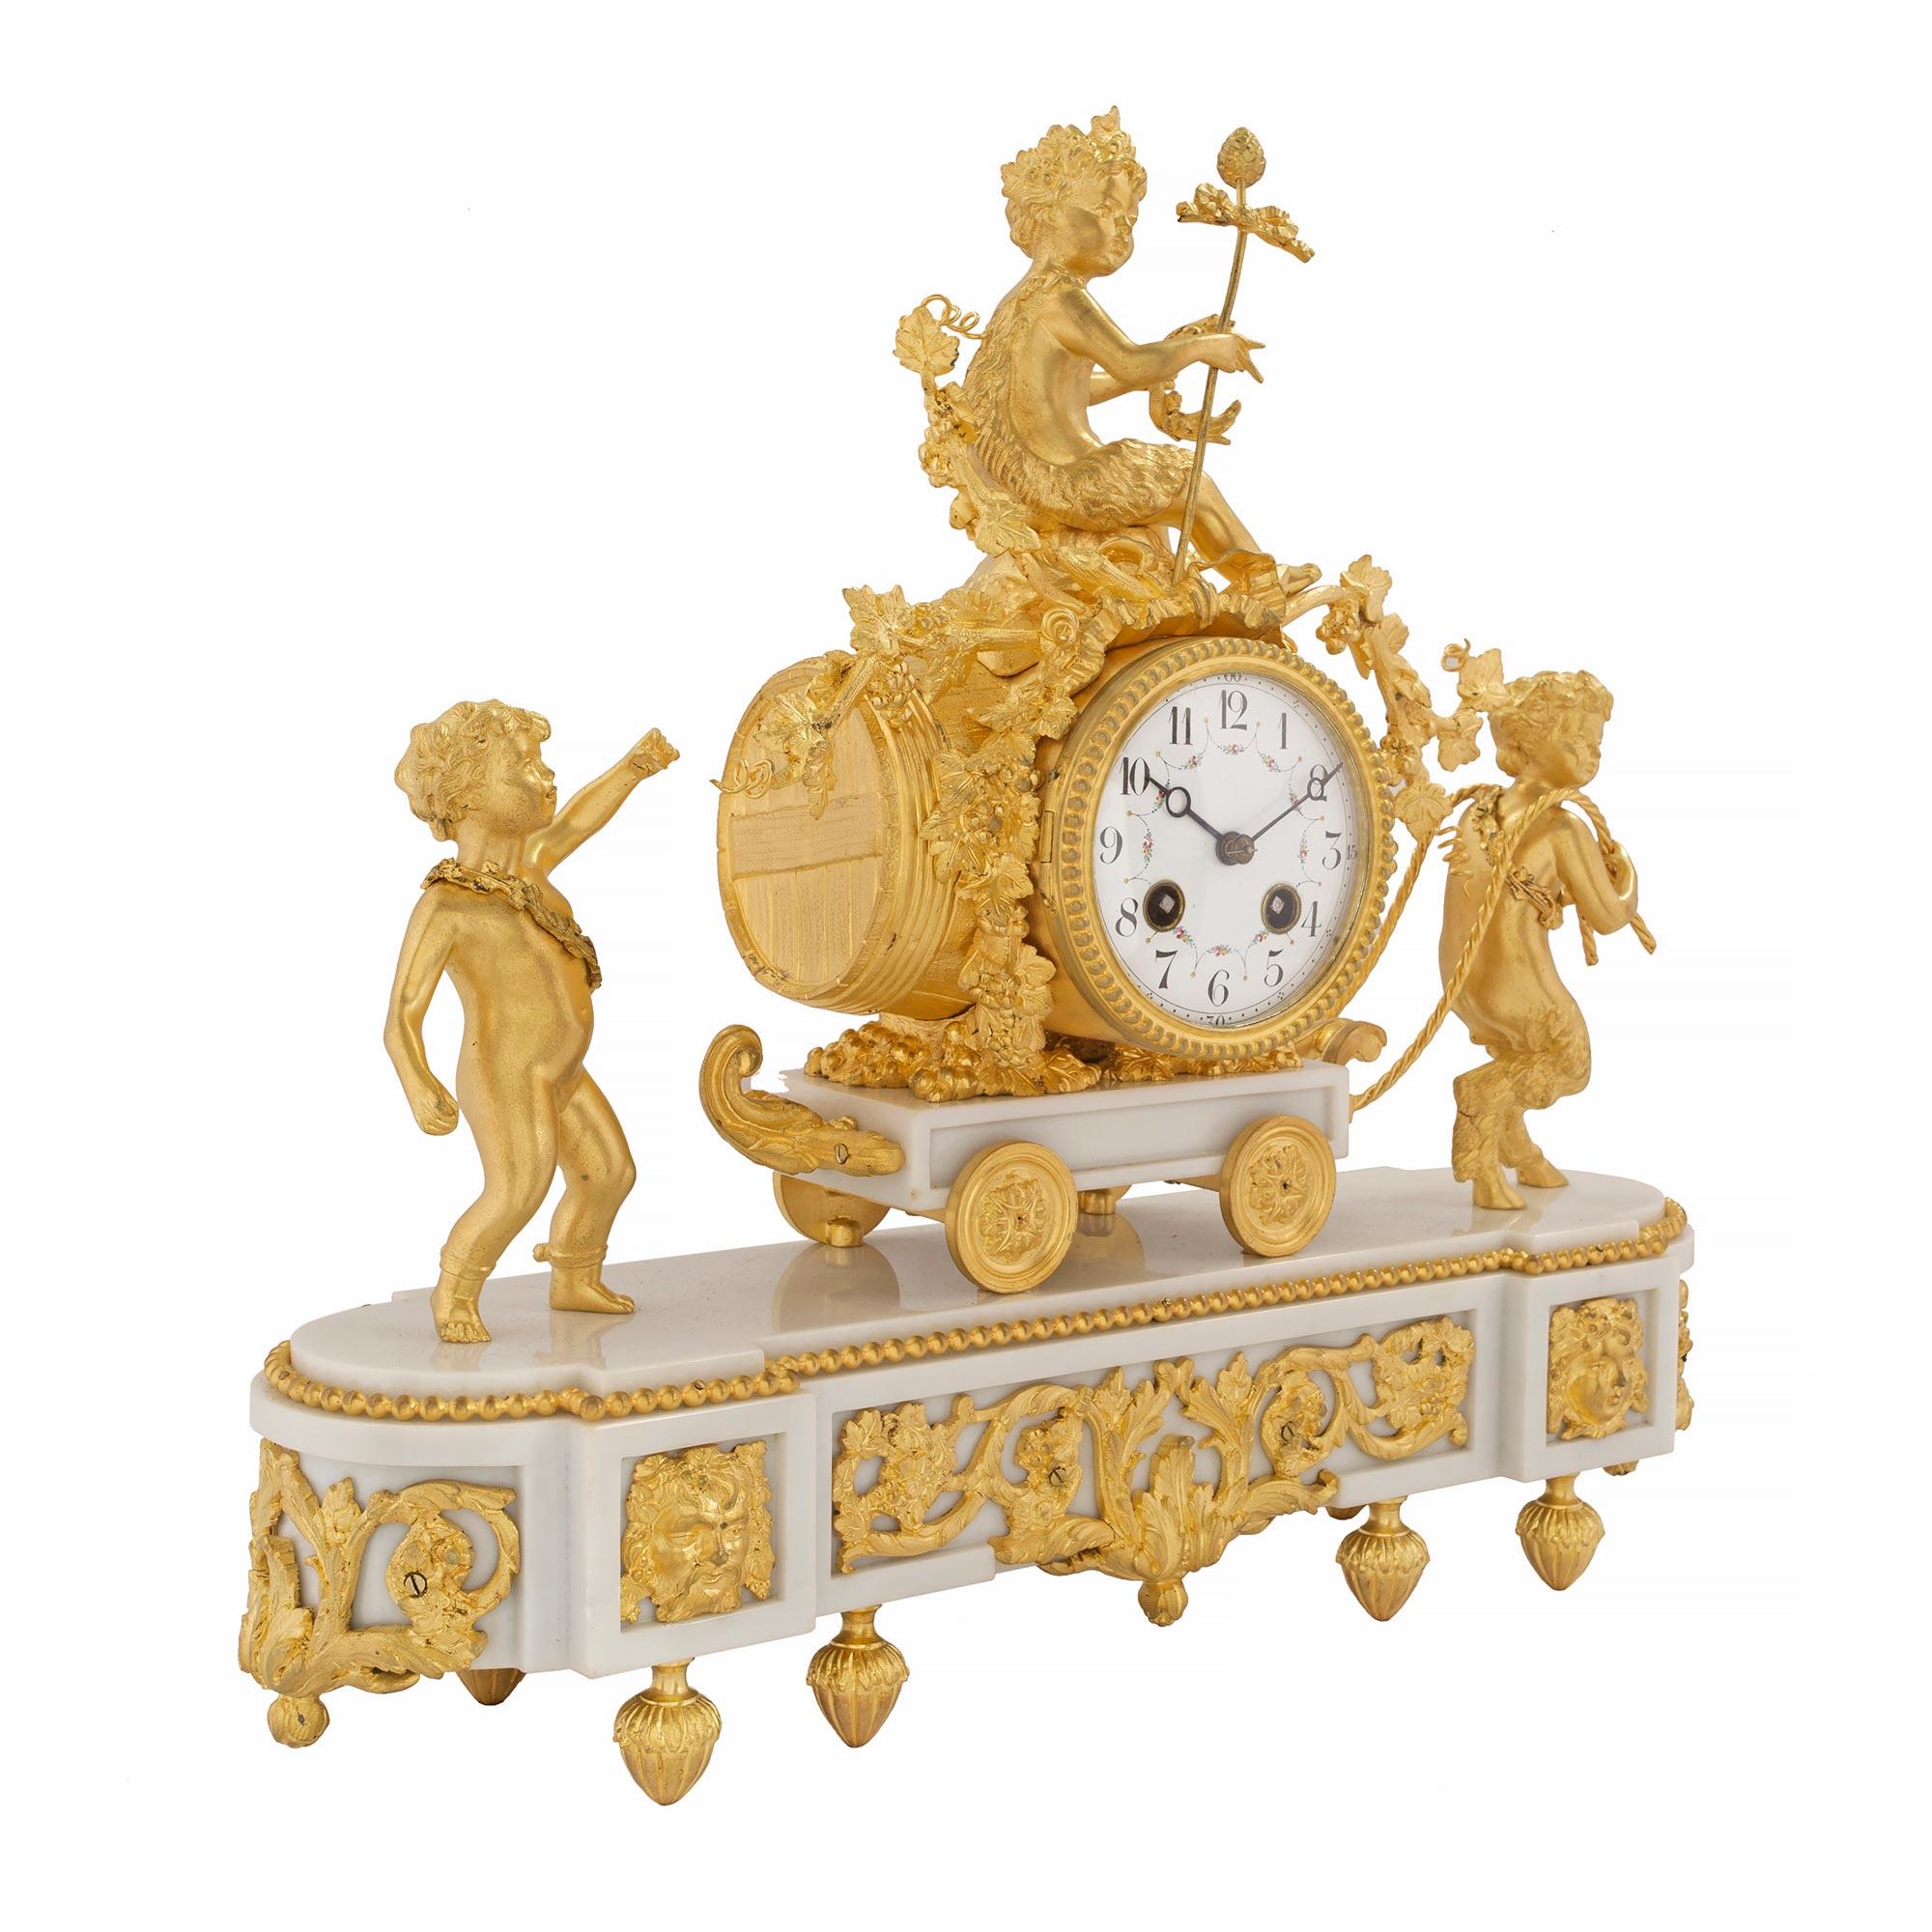 Une élégante horloge française du 19ème siècle de style Louis XVI en marbre blanc de Carrare et bronze doré. L'horloge est surélevée par des pieds en forme de topie feuillue sous la base de forme oblongue en marbre blanc de Carrare. La base présente